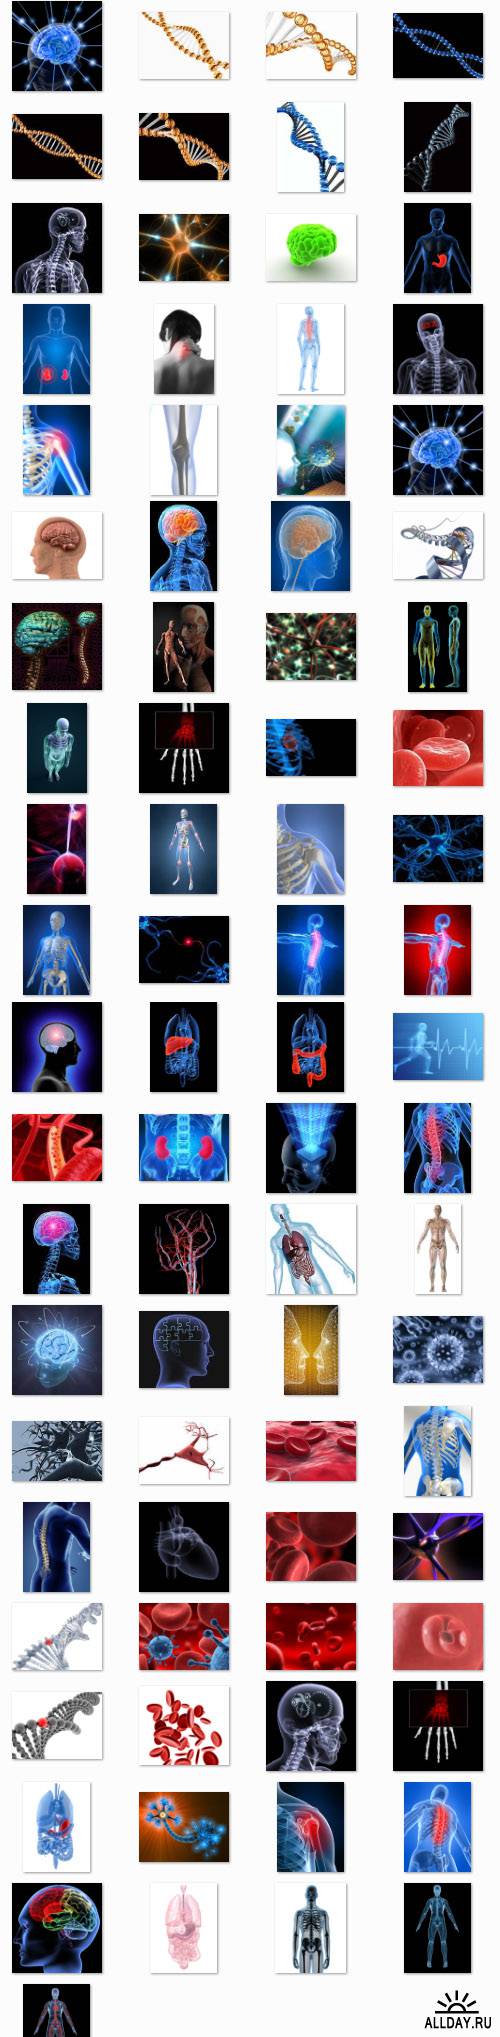 StockMix of Human Anatomy in 3D Renders